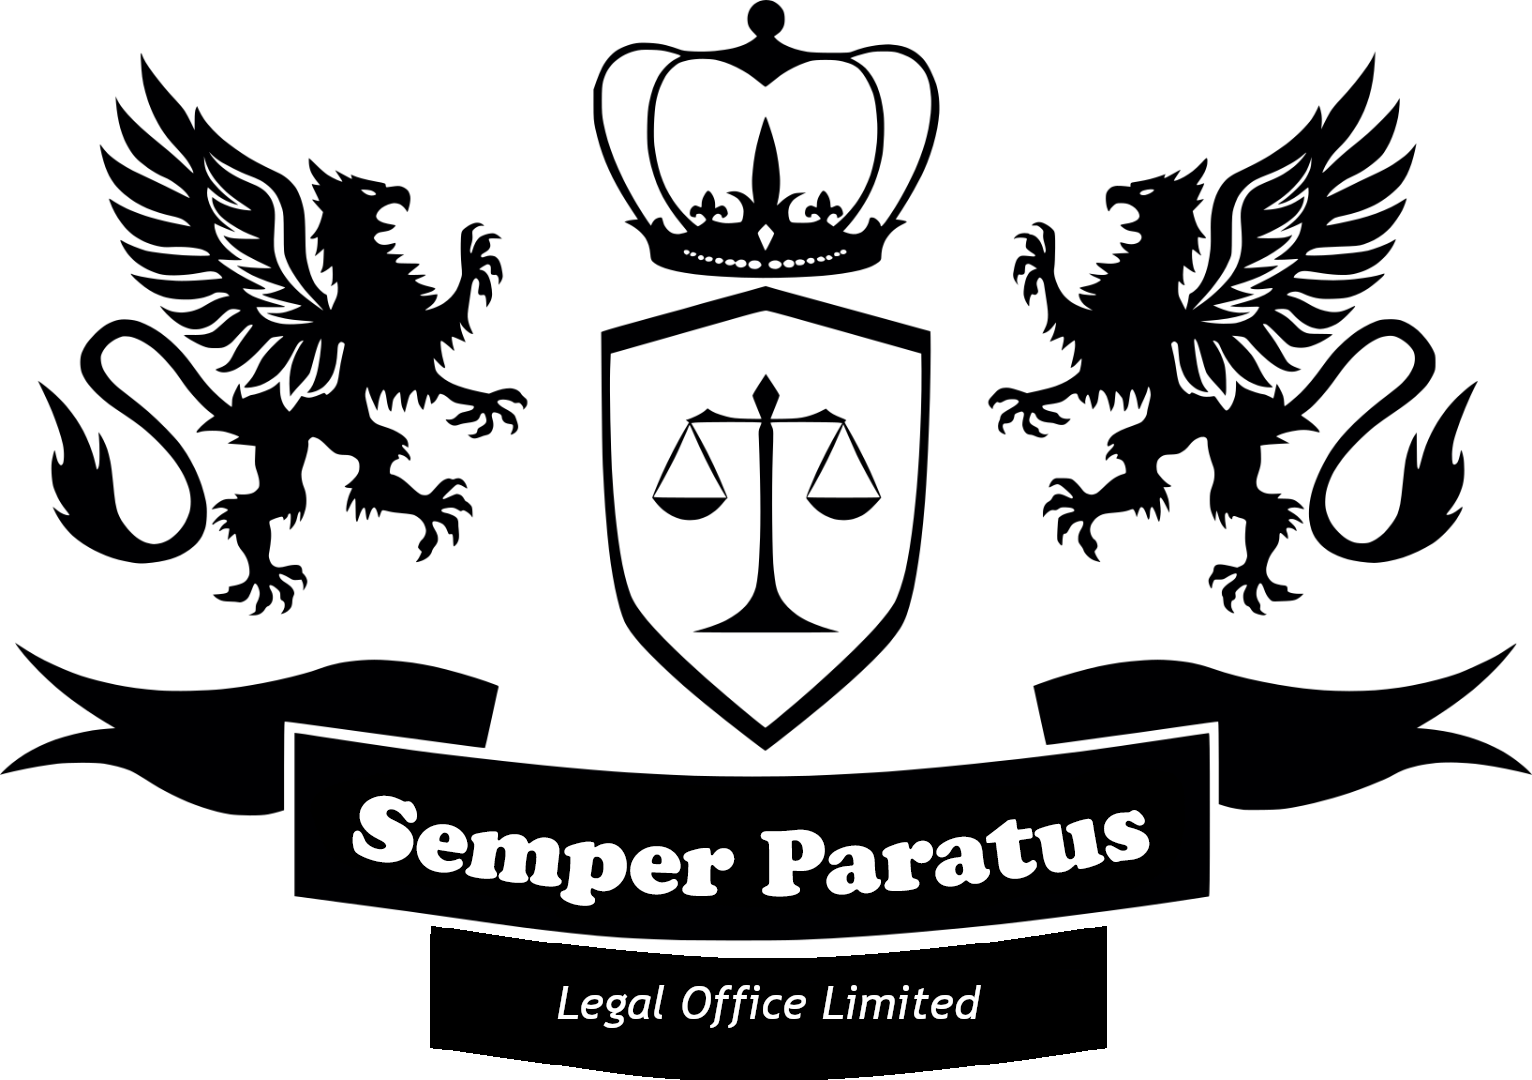 Semper Paratus Legal Office